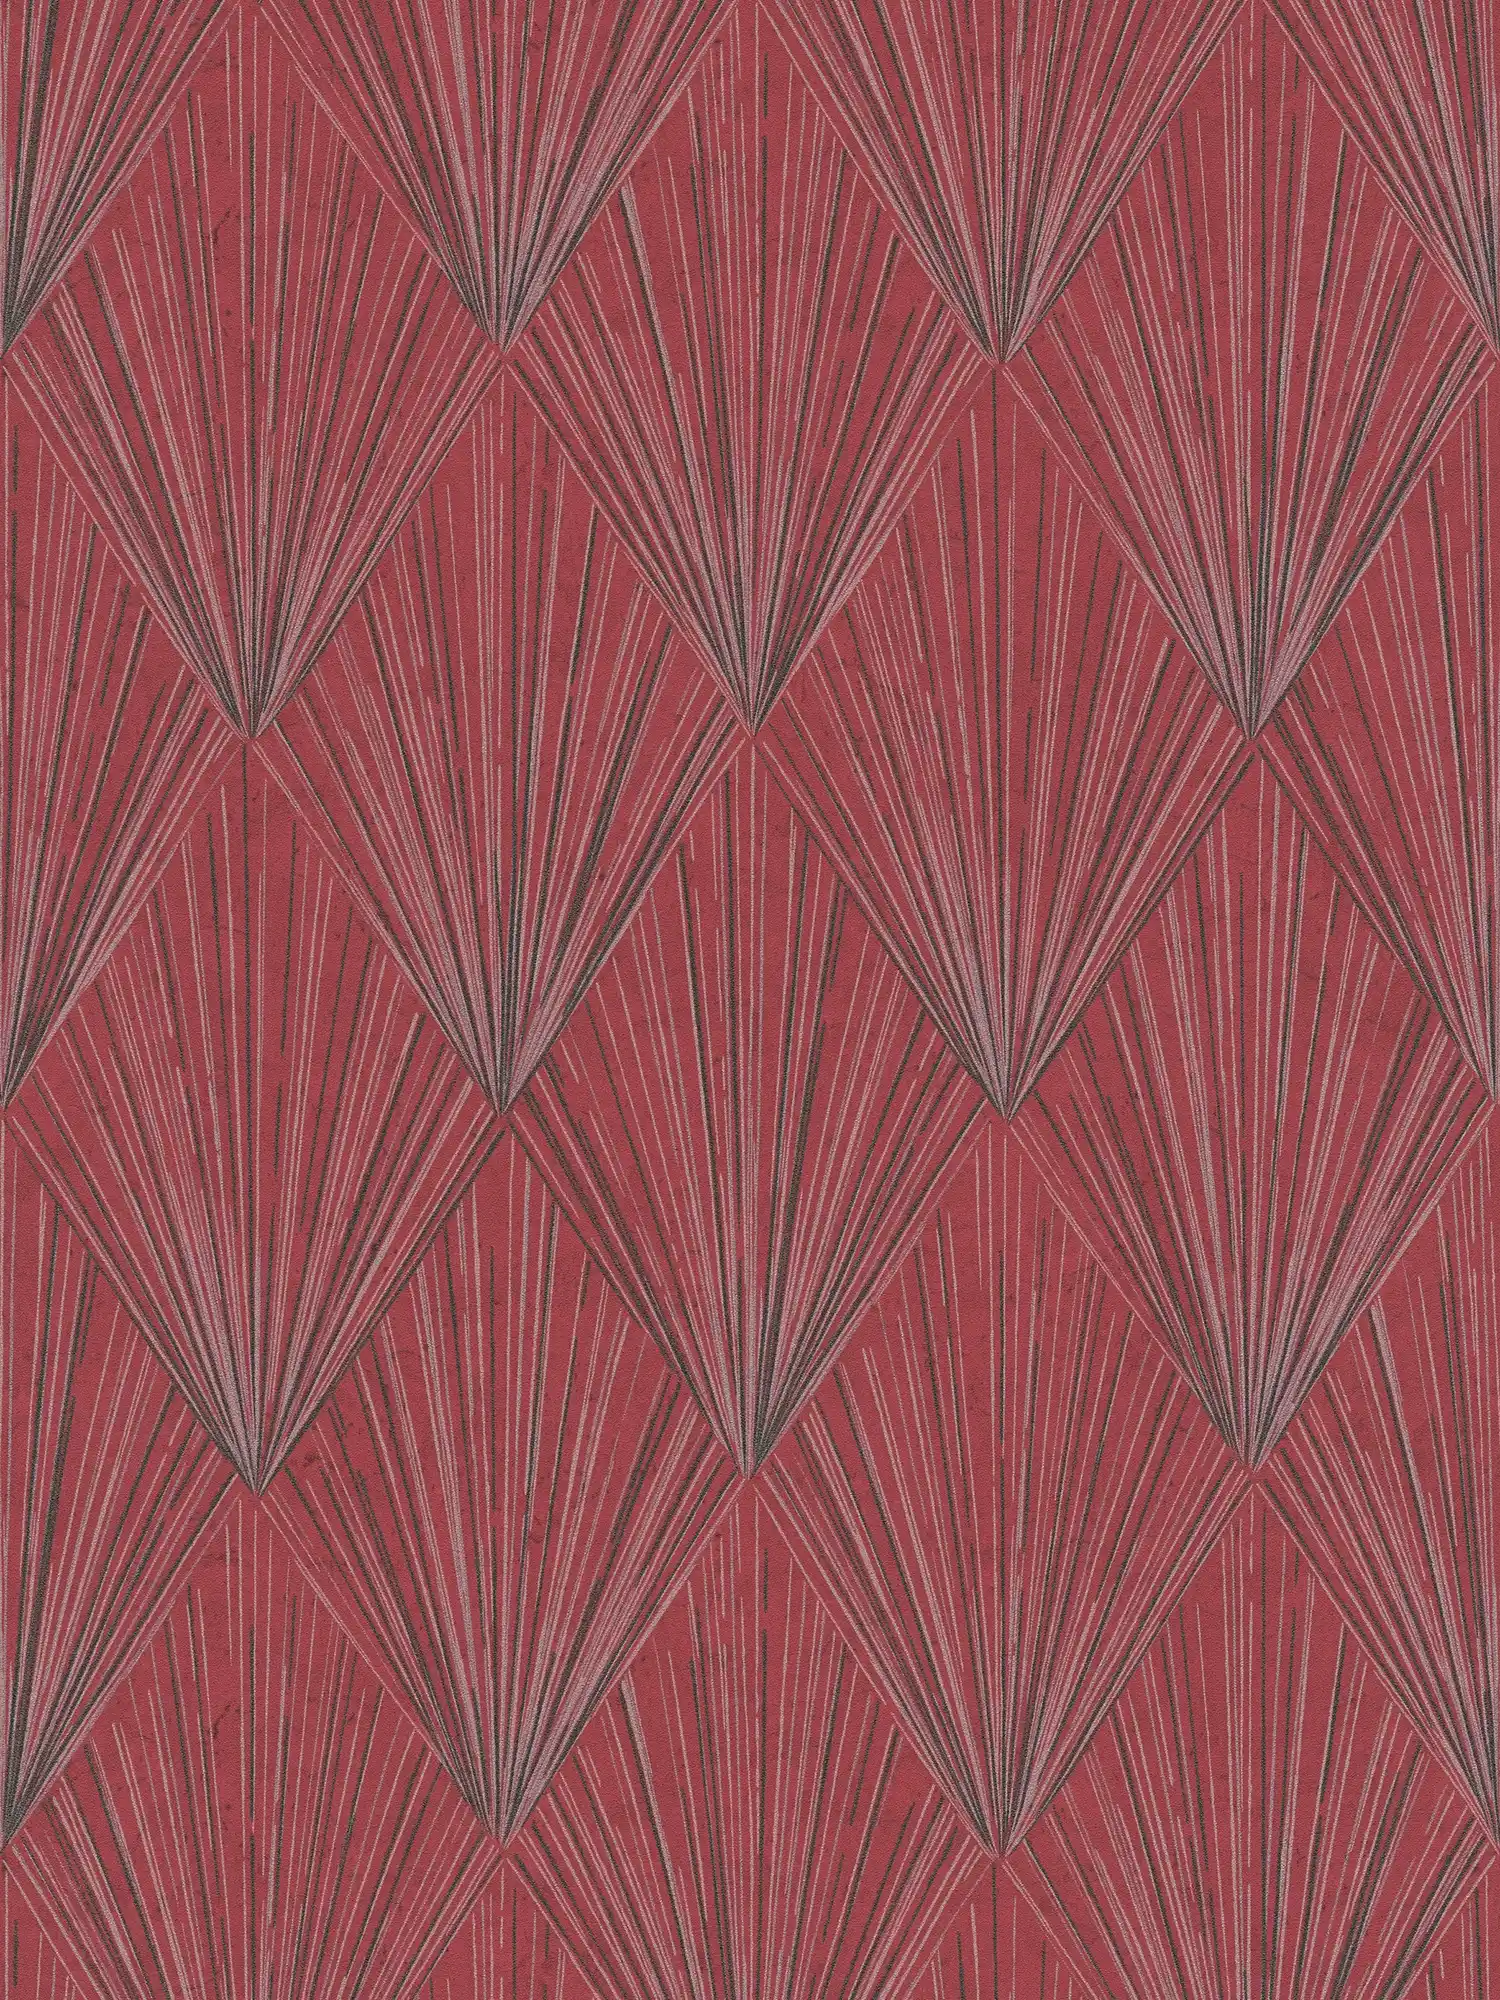 Behang met modern Art Deco patroon & metallic effect - metallic, rood, zwart
